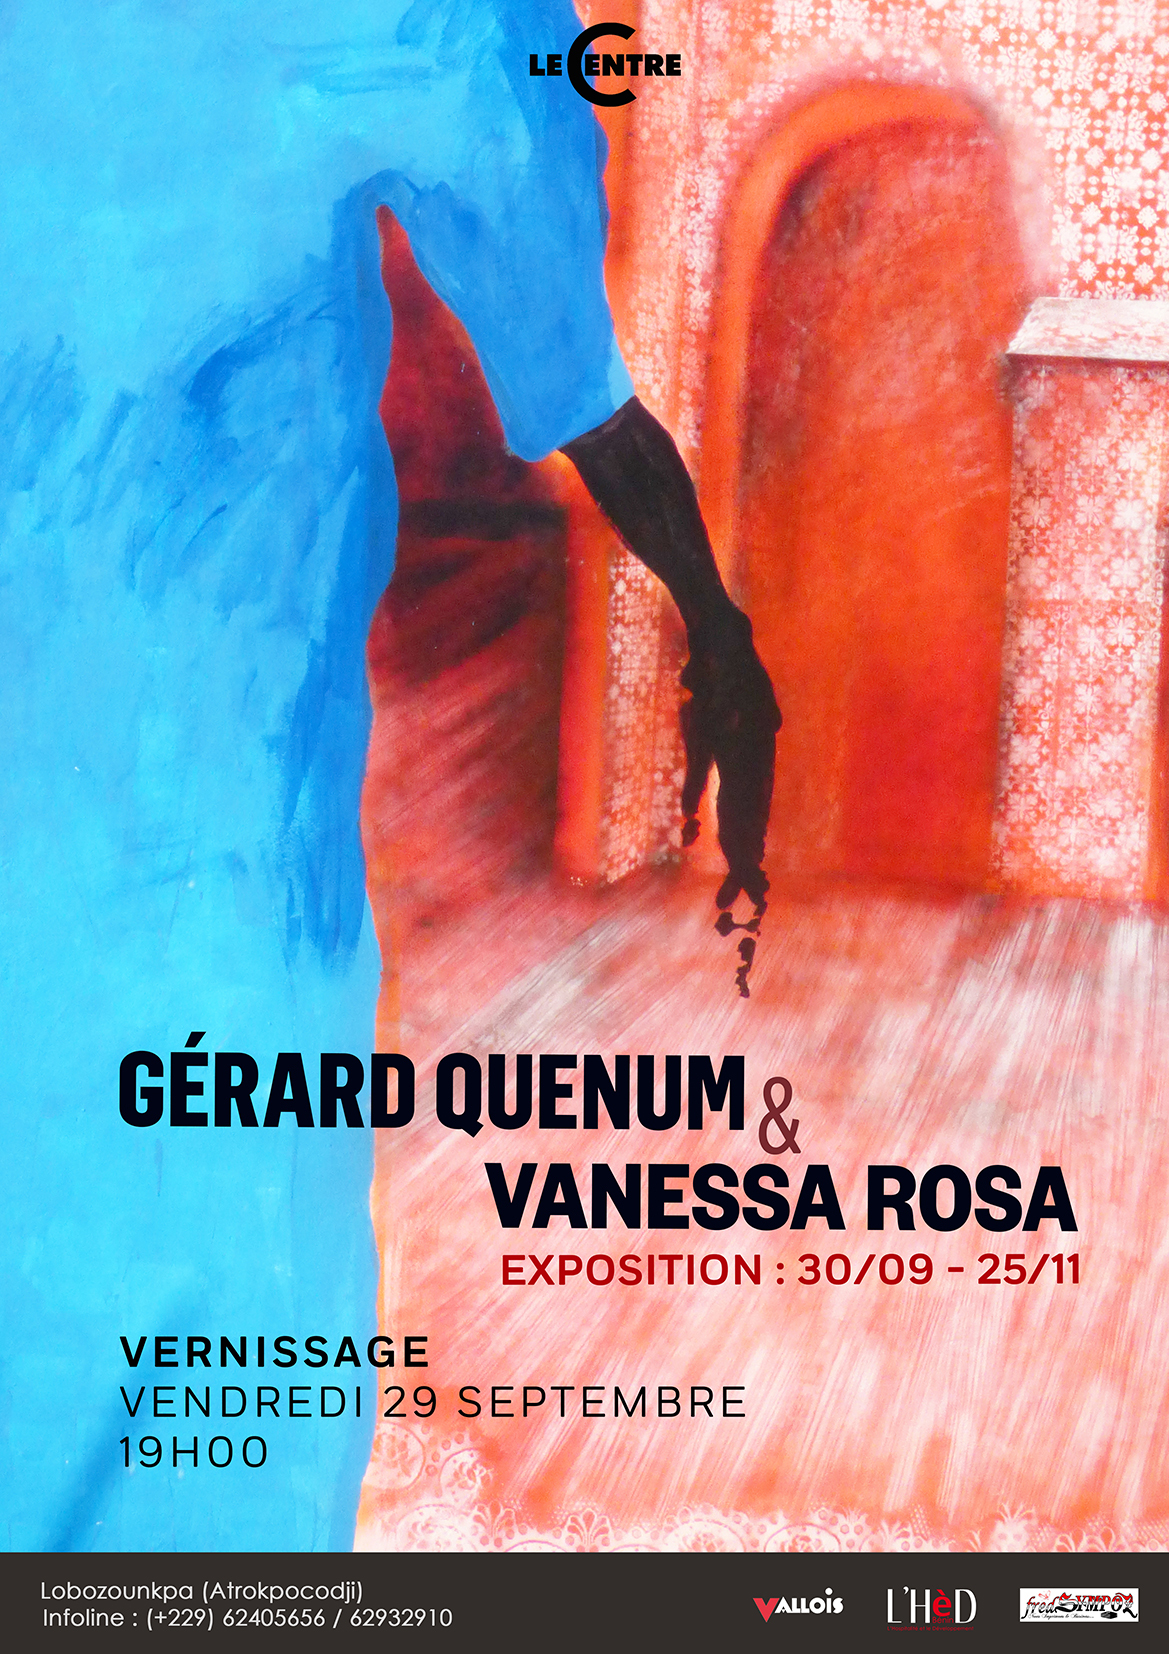 Gérard Quenum & Vanessa Rosa